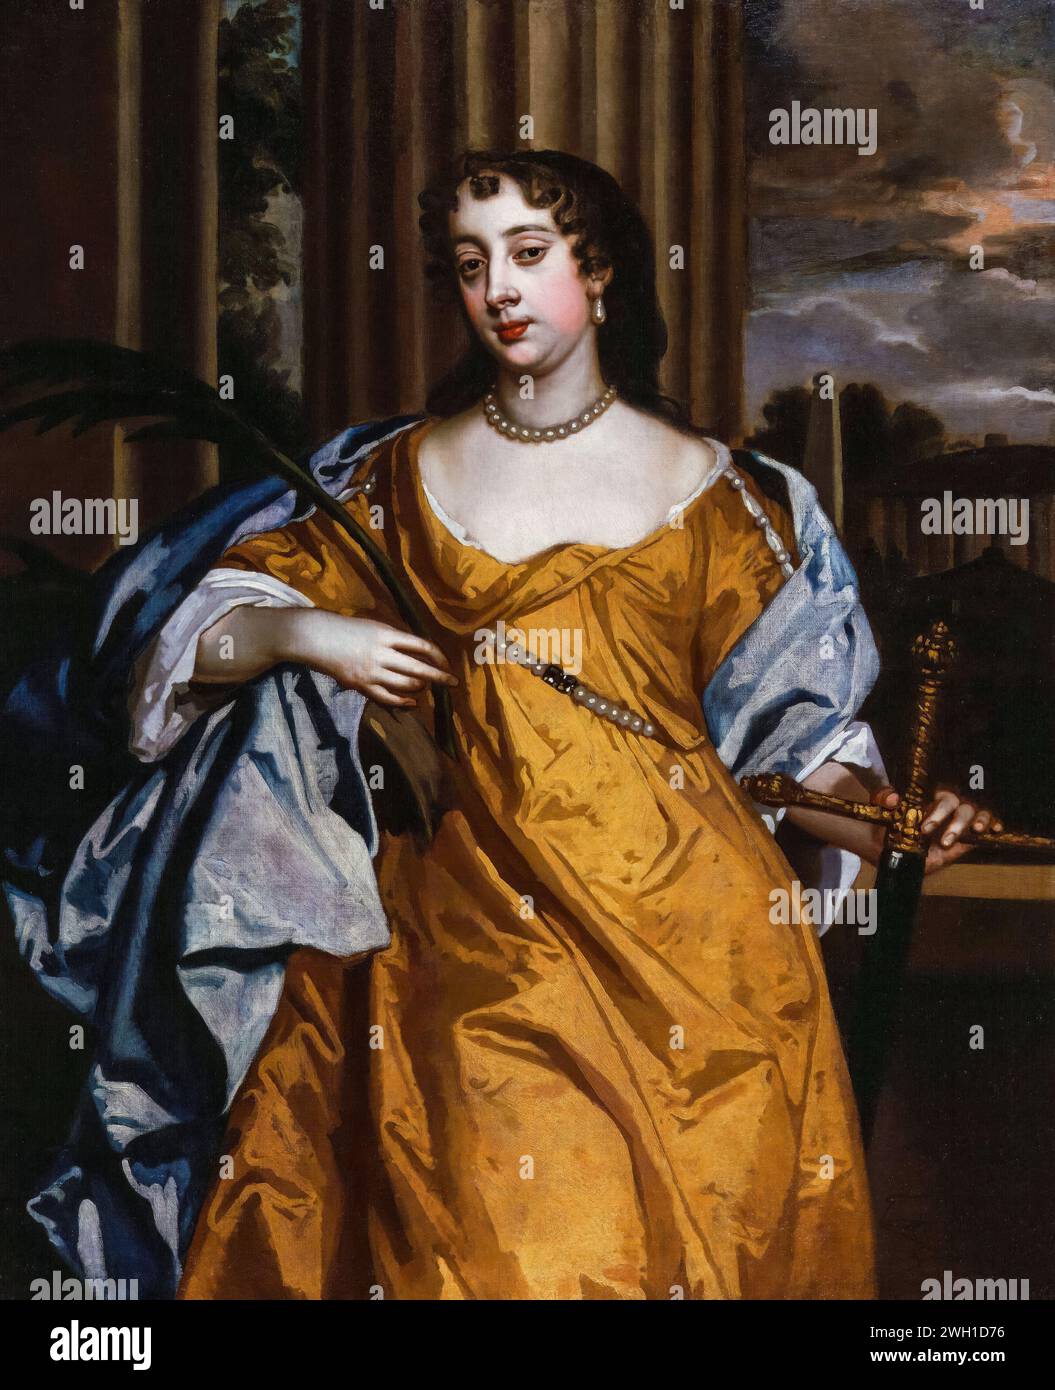 Barbara Palmer, i duchessa di Cleveland (nata Barbara Villiers, 1640-1709), amante reale inglese di re Carlo II d'Inghilterra, ritratto dipinto ad olio su tela dopo Sir Peter Lely, circa 1666 Foto Stock